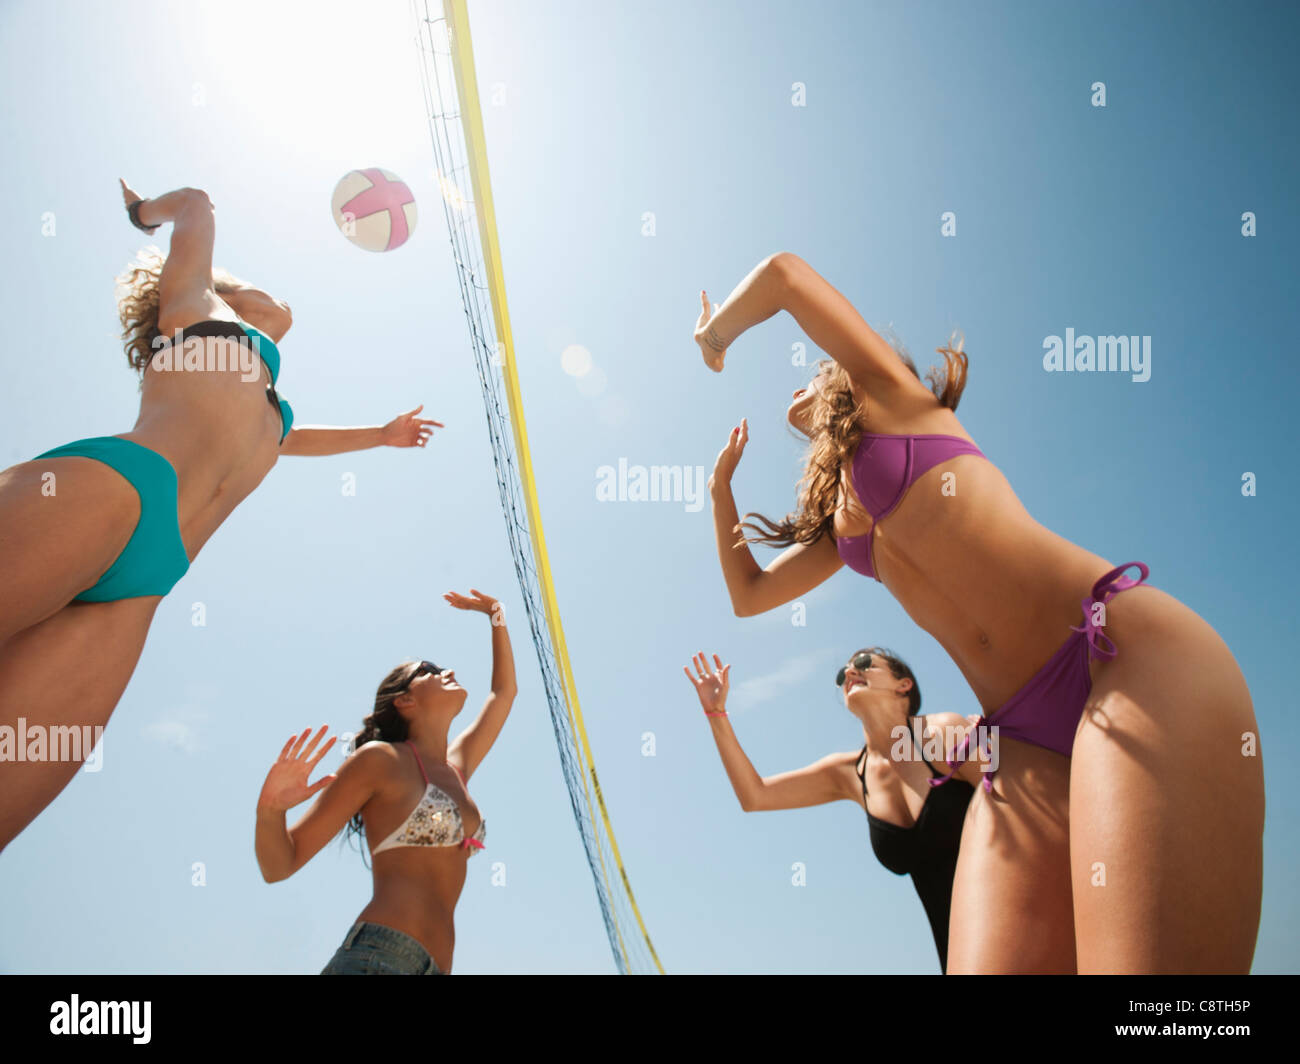 USA, California, Malibu, Group of young women playing beach volleyball Stock Photo